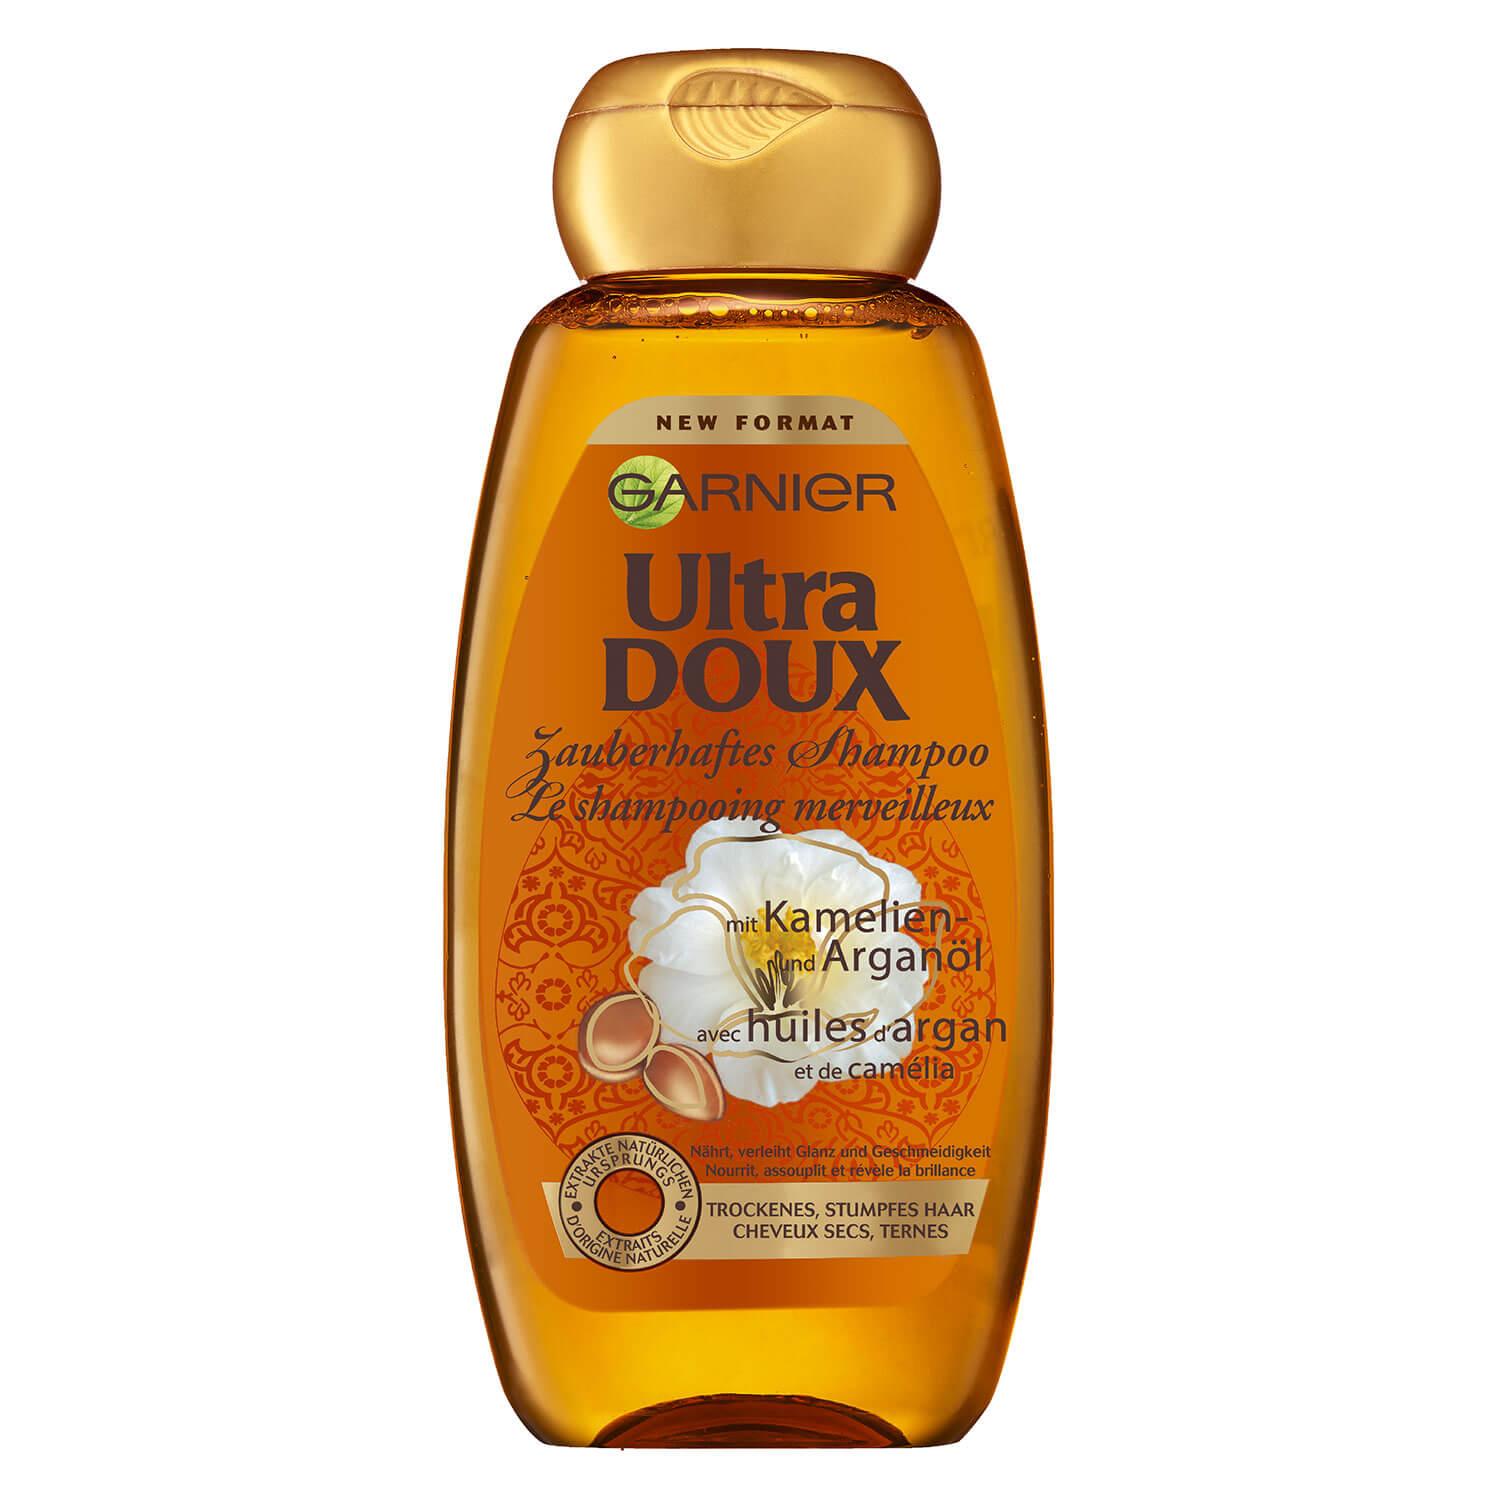 Ultra Doux Haircare - Kamelien- und Arganöl Pflegendes Shampoo